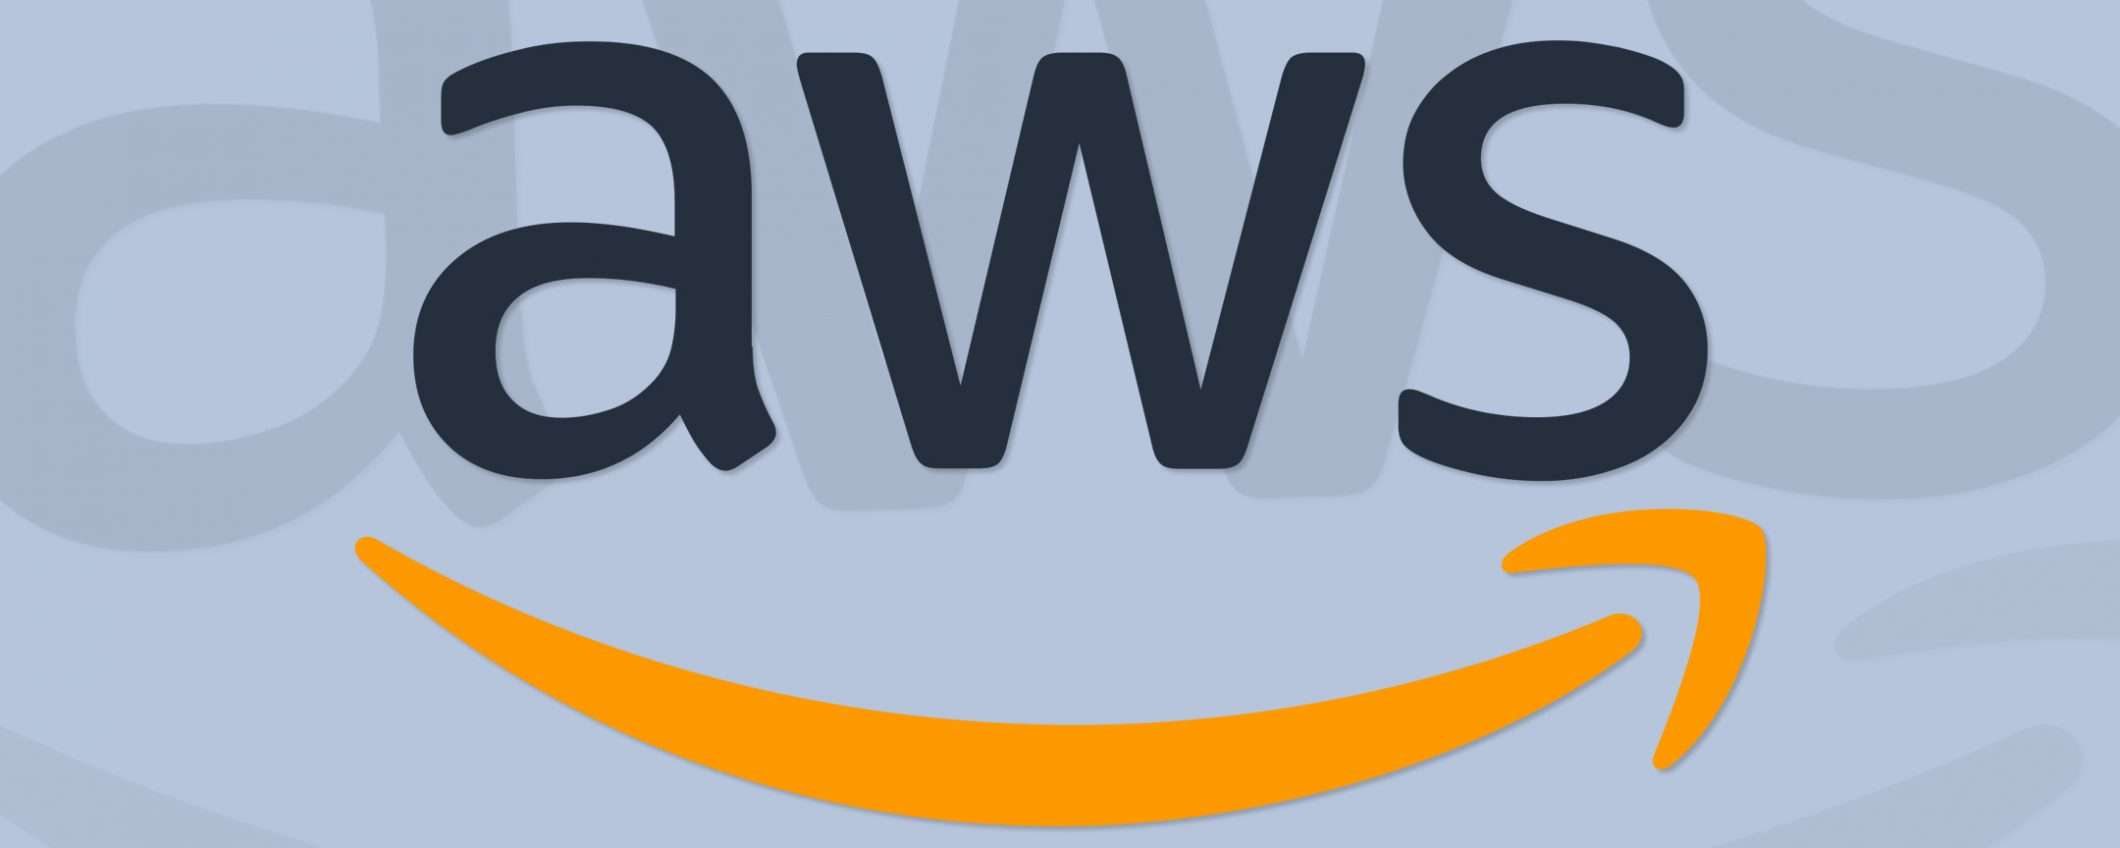 Amazon, trimestrale record grazie al cloud